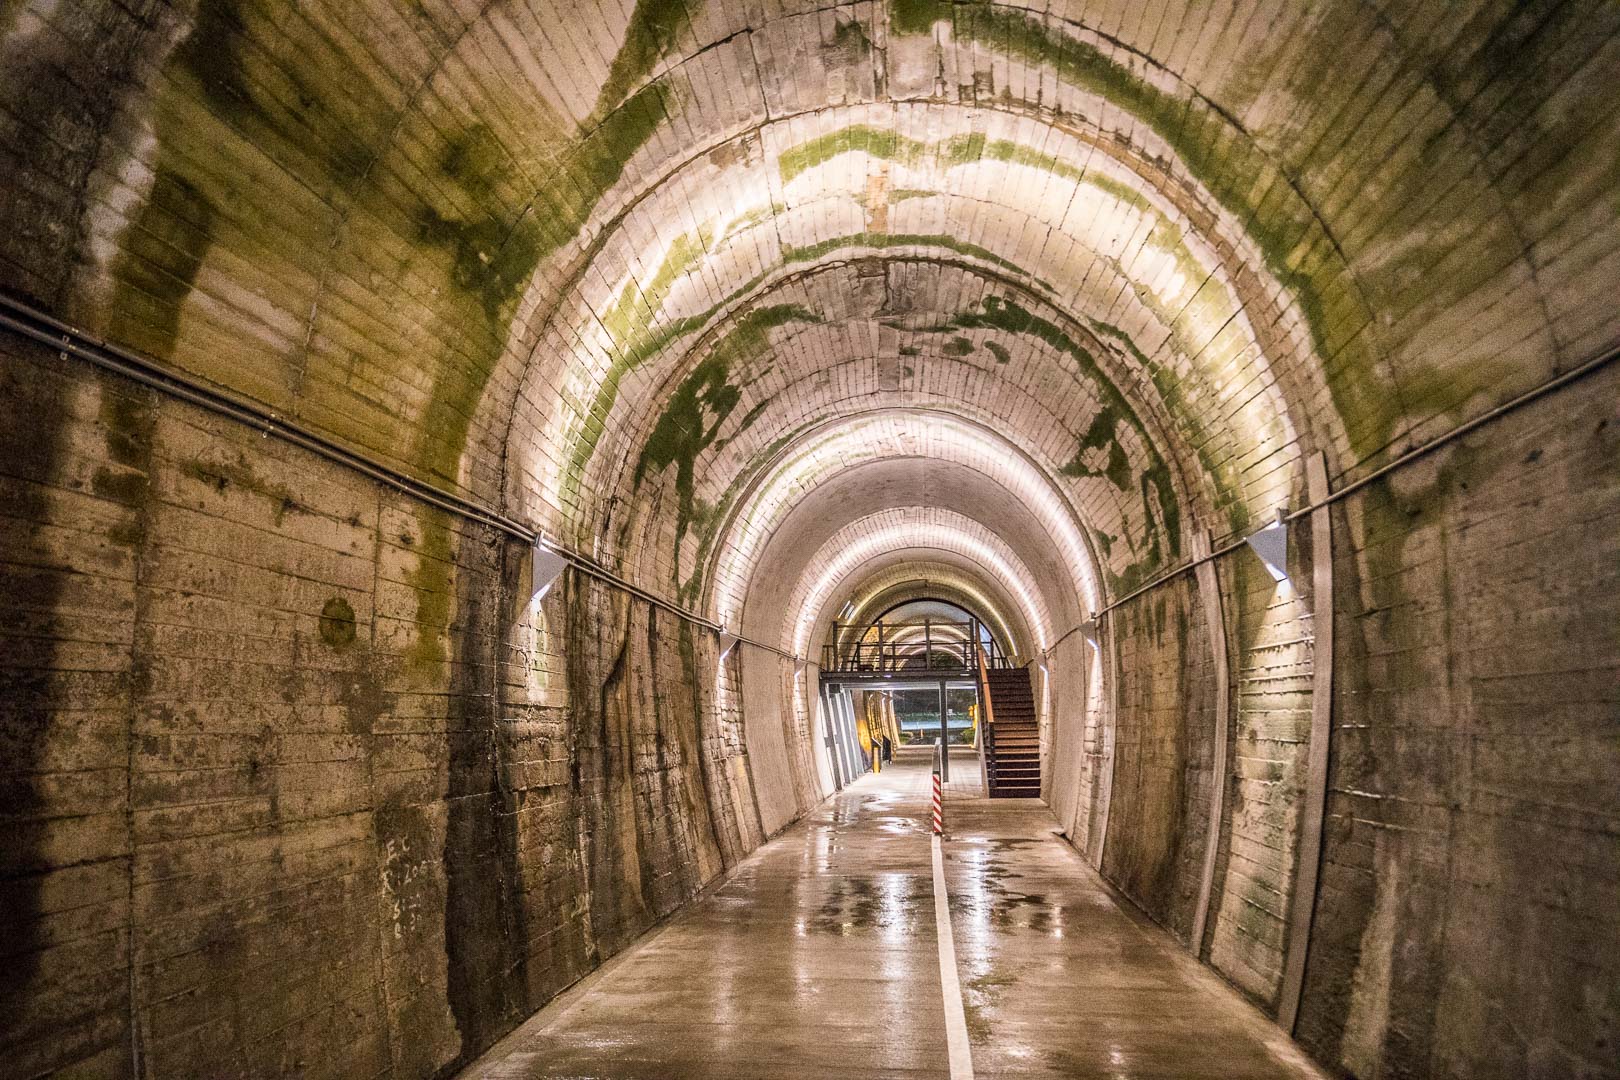 宜蘭景點,蘇澳景點,蘇東隧道3D海底彩繪隧道,蘇東隧道,3D海底彩繪隧道,宜蘭蘇東隧道3,宜蘭3D海底彩繪隧道